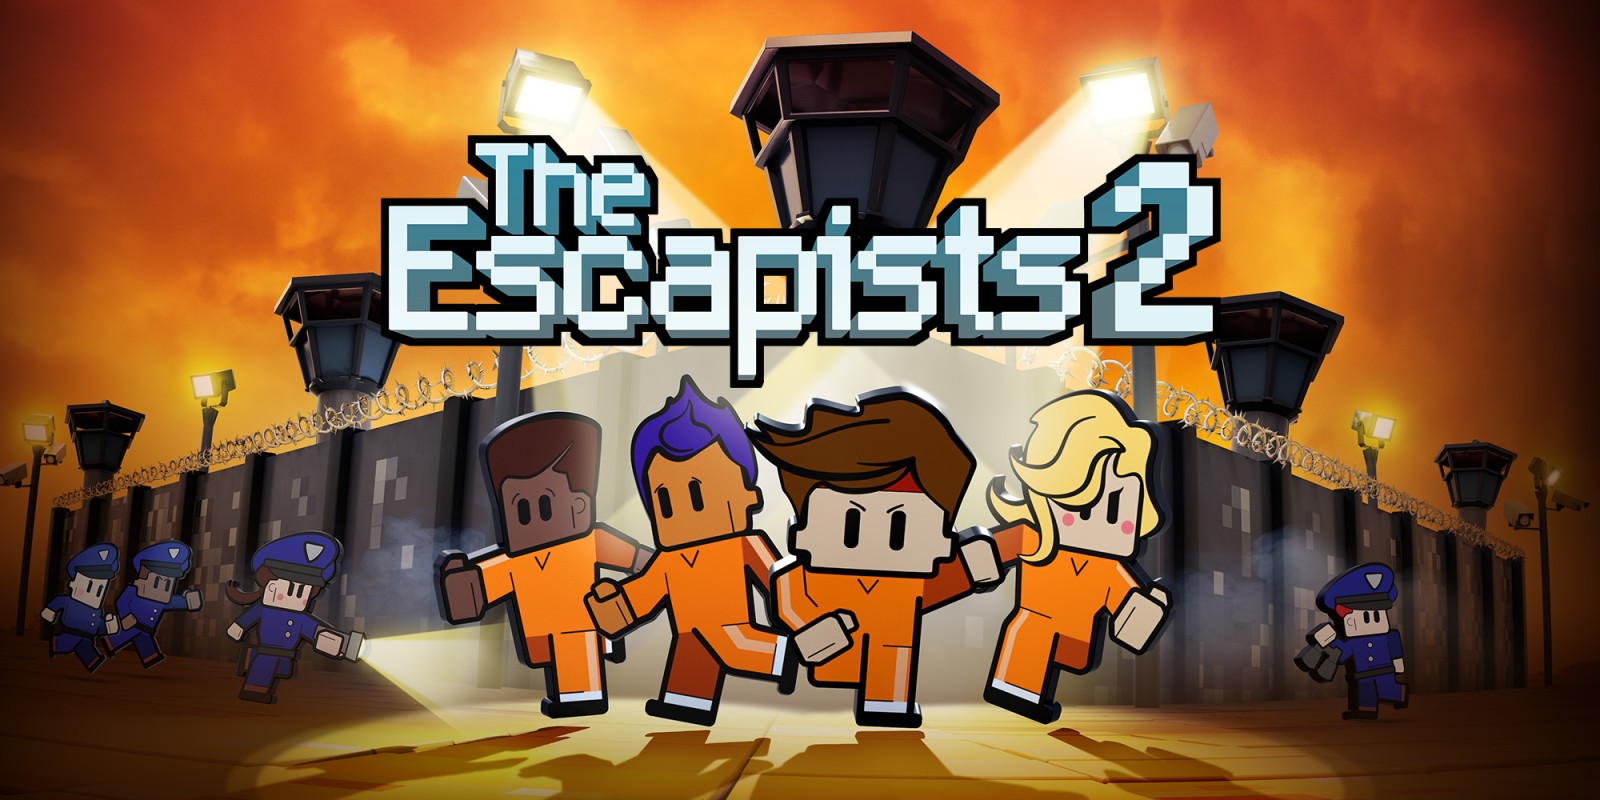 download the escapist 2 prison for free